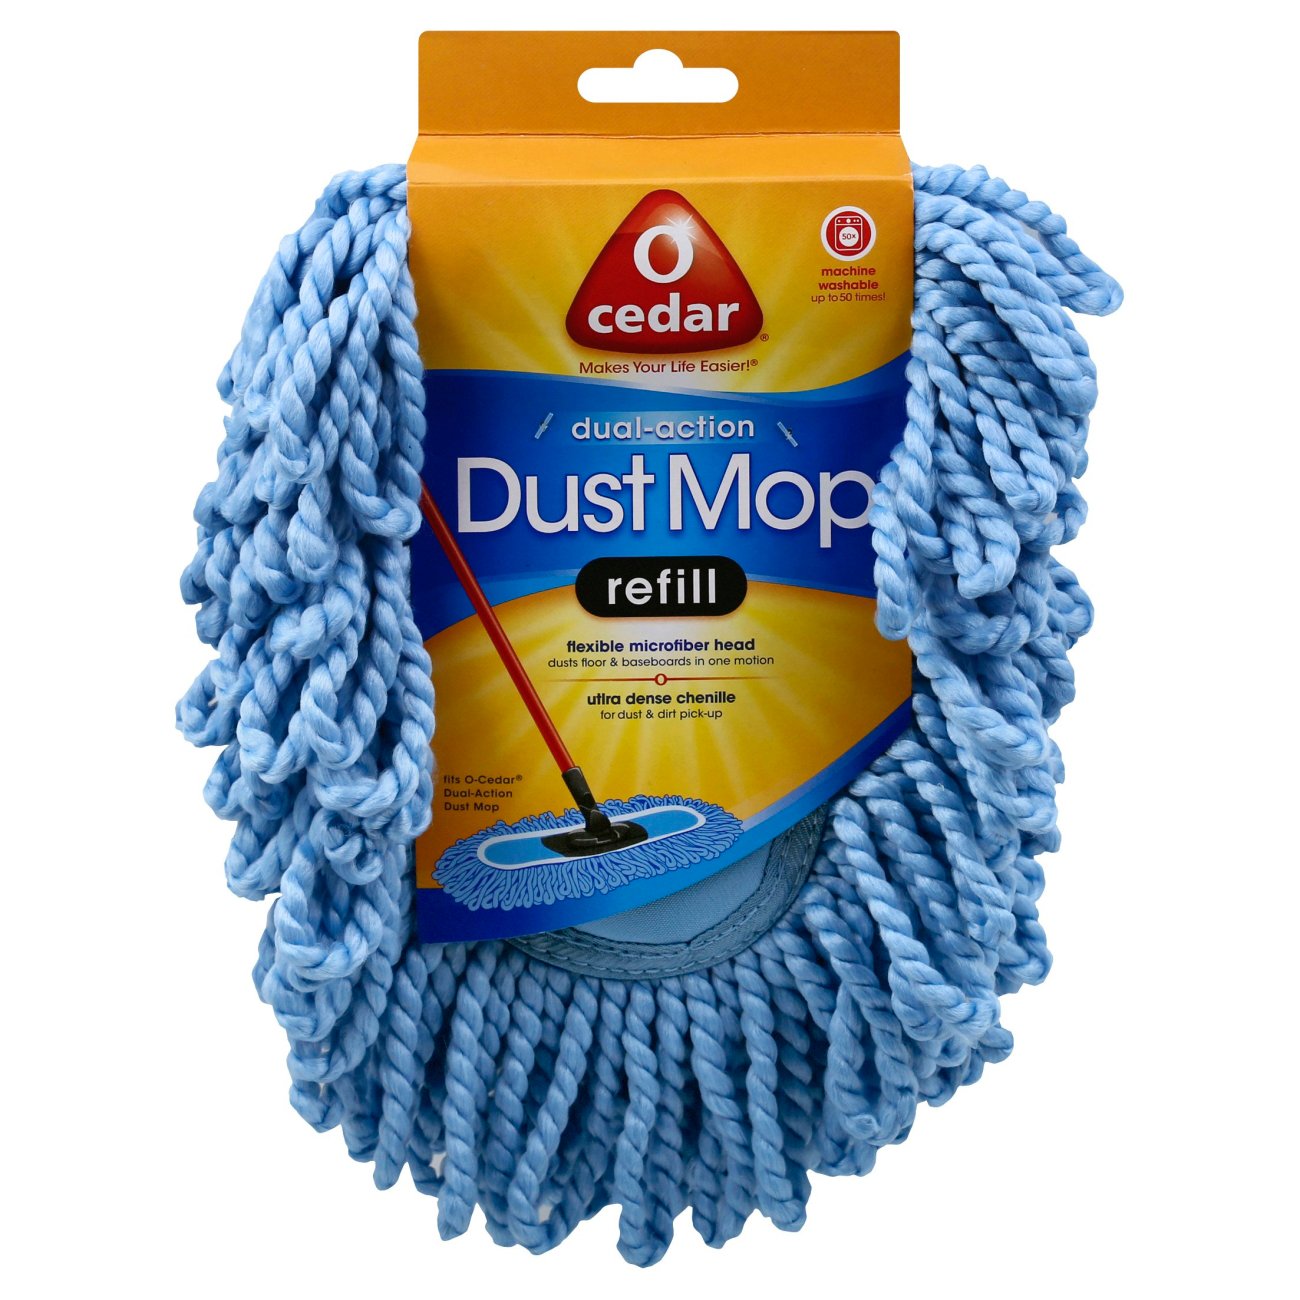 Onderdrukker Dood in de wereld genetisch O-Cedar Dual-Action Dust Mop Refill - Shop Brooms & Dust Mops at H-E-B